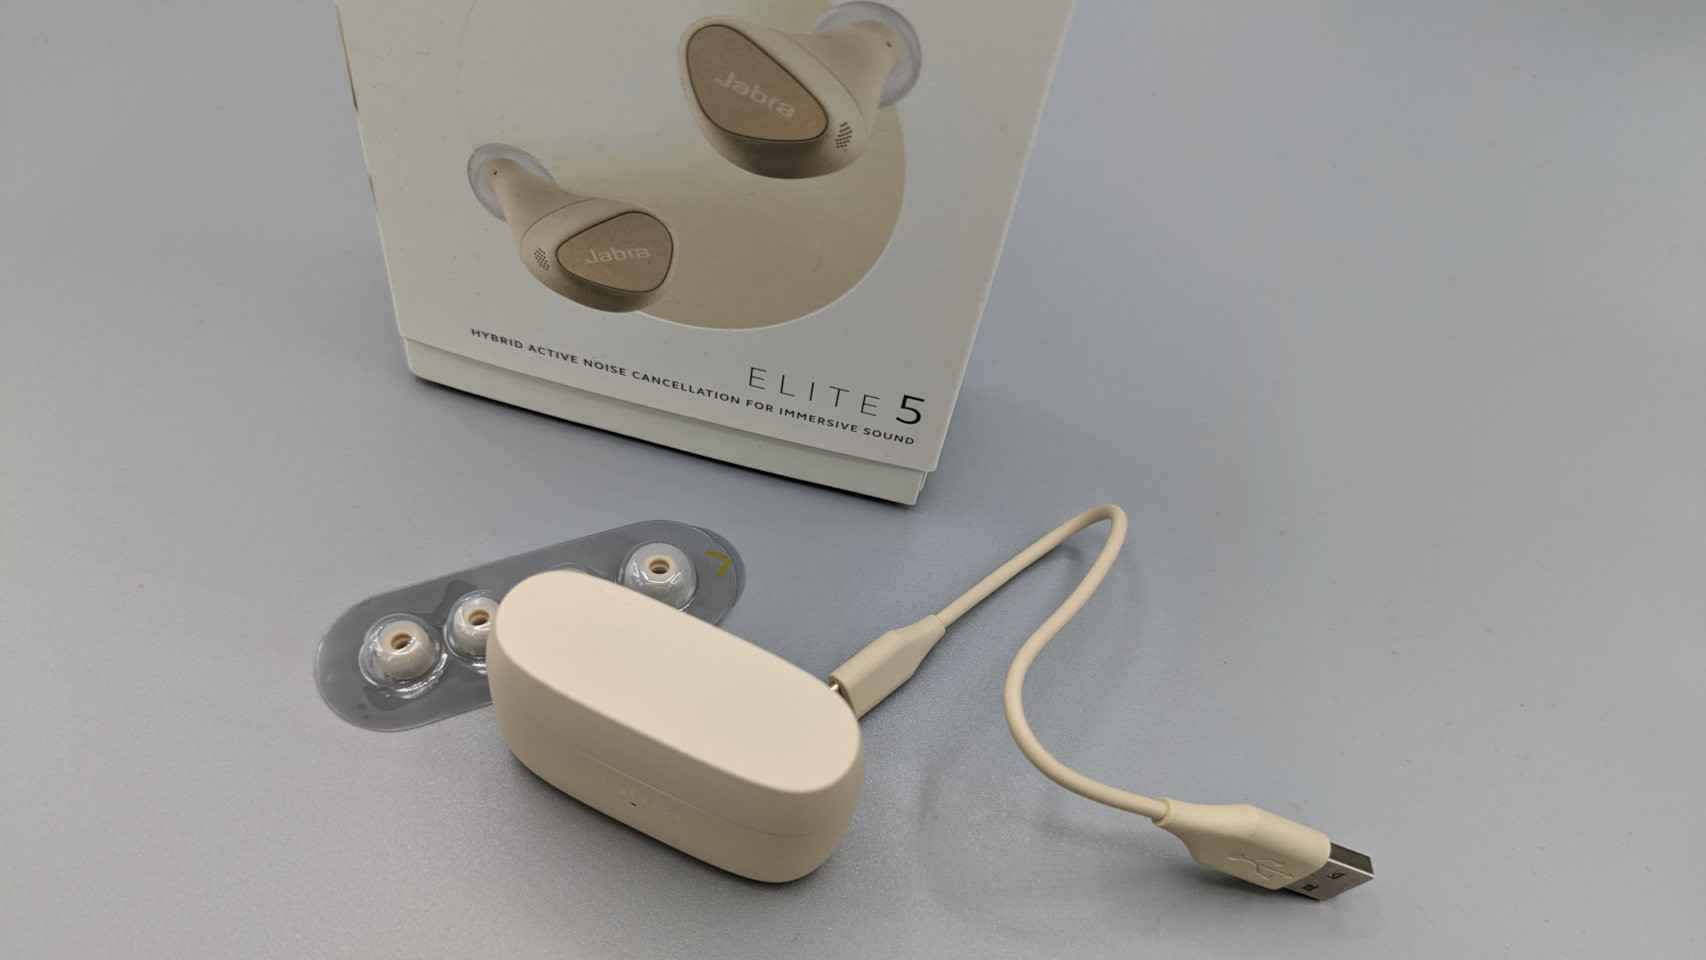 Los Jabra Elite 5 vienen con un cable USB-C y almohadillas de varios tamaños